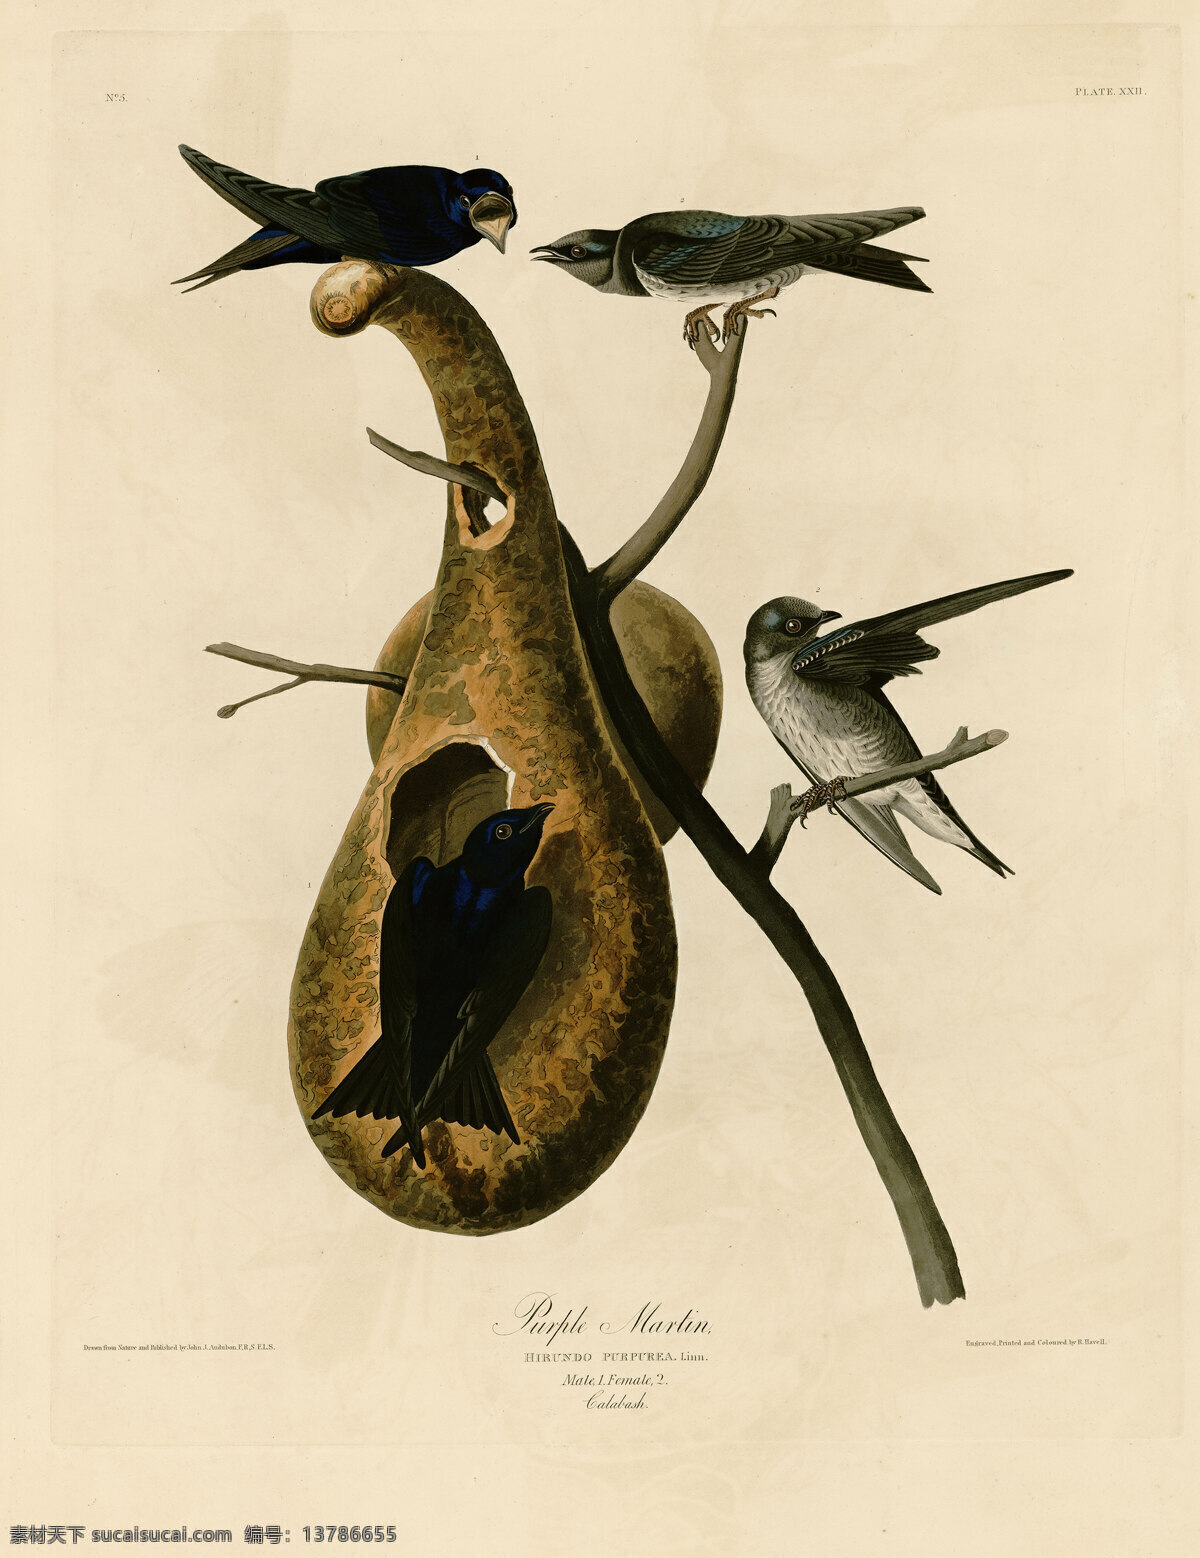 印刷 手绘 鸟类 手绘鸟类 美国鸟类 花鸟 鸟儿 鸟 禽类 西方图谱 植物 贝拉贝罗 鸟类素材 高清 艺术微喷 绘画书法 文化艺术